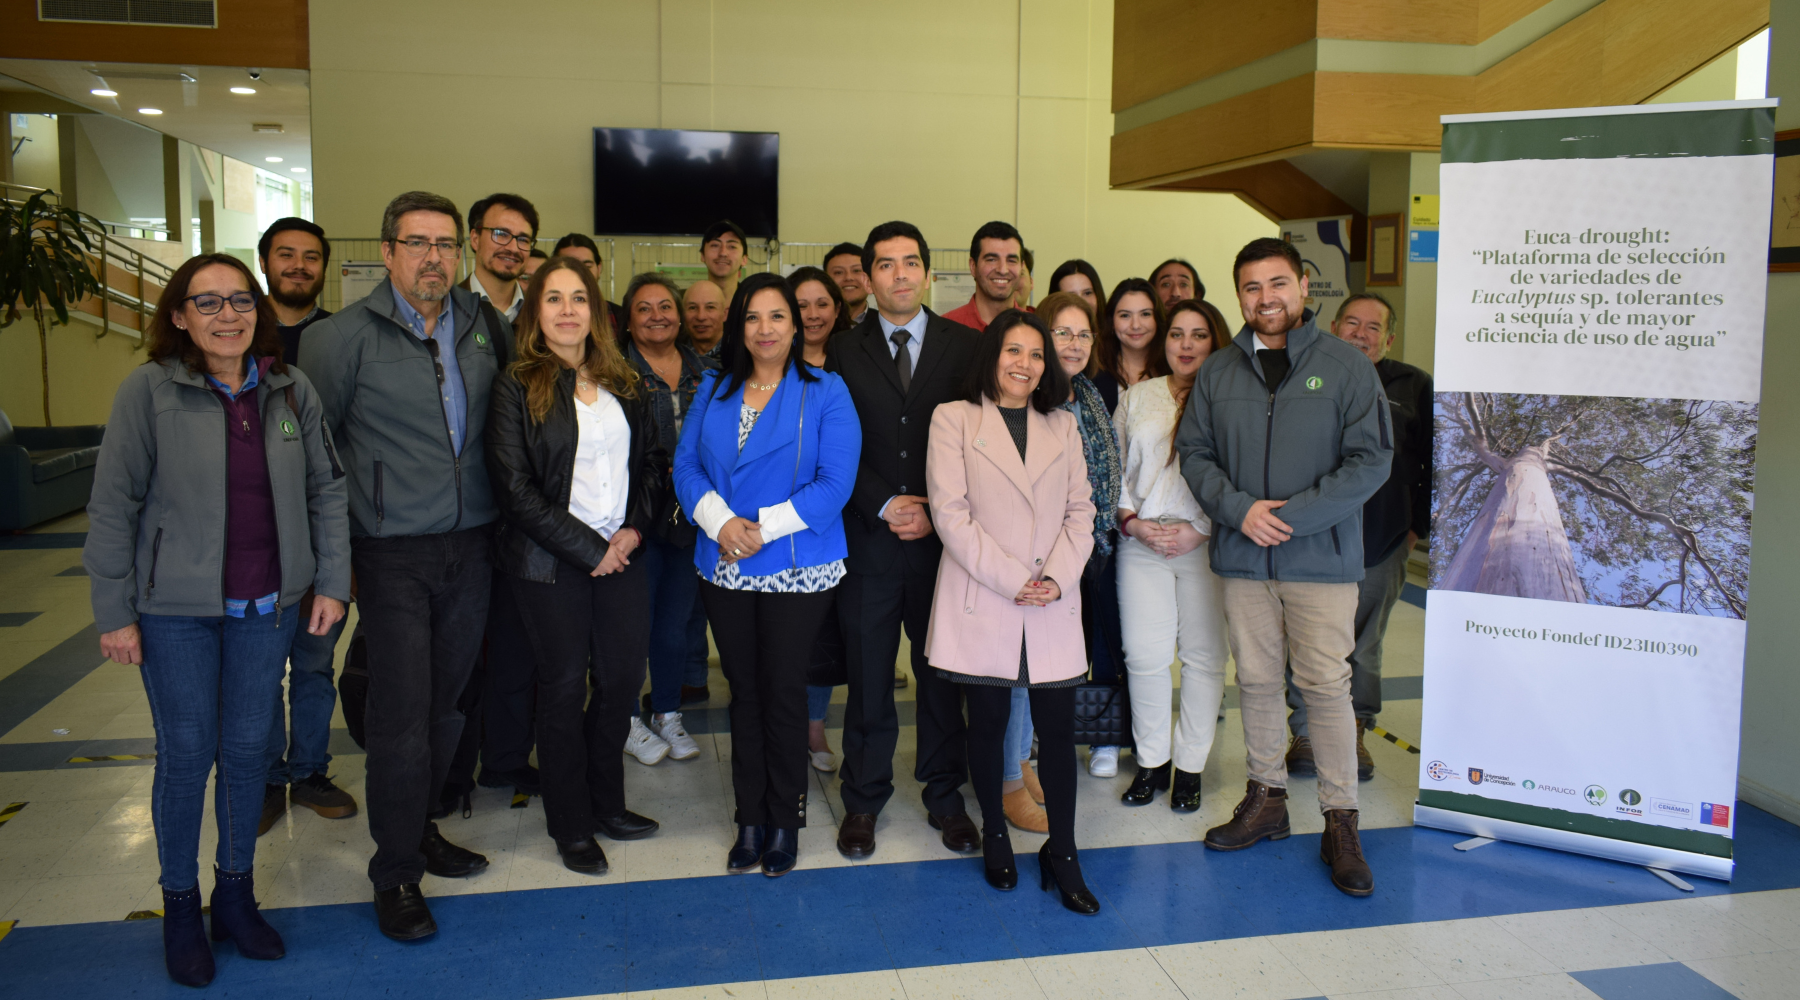 Proyecto Fondef Euca-drought realizó exitoso Seminario de lanzamiento en el Centro de Biotecnología